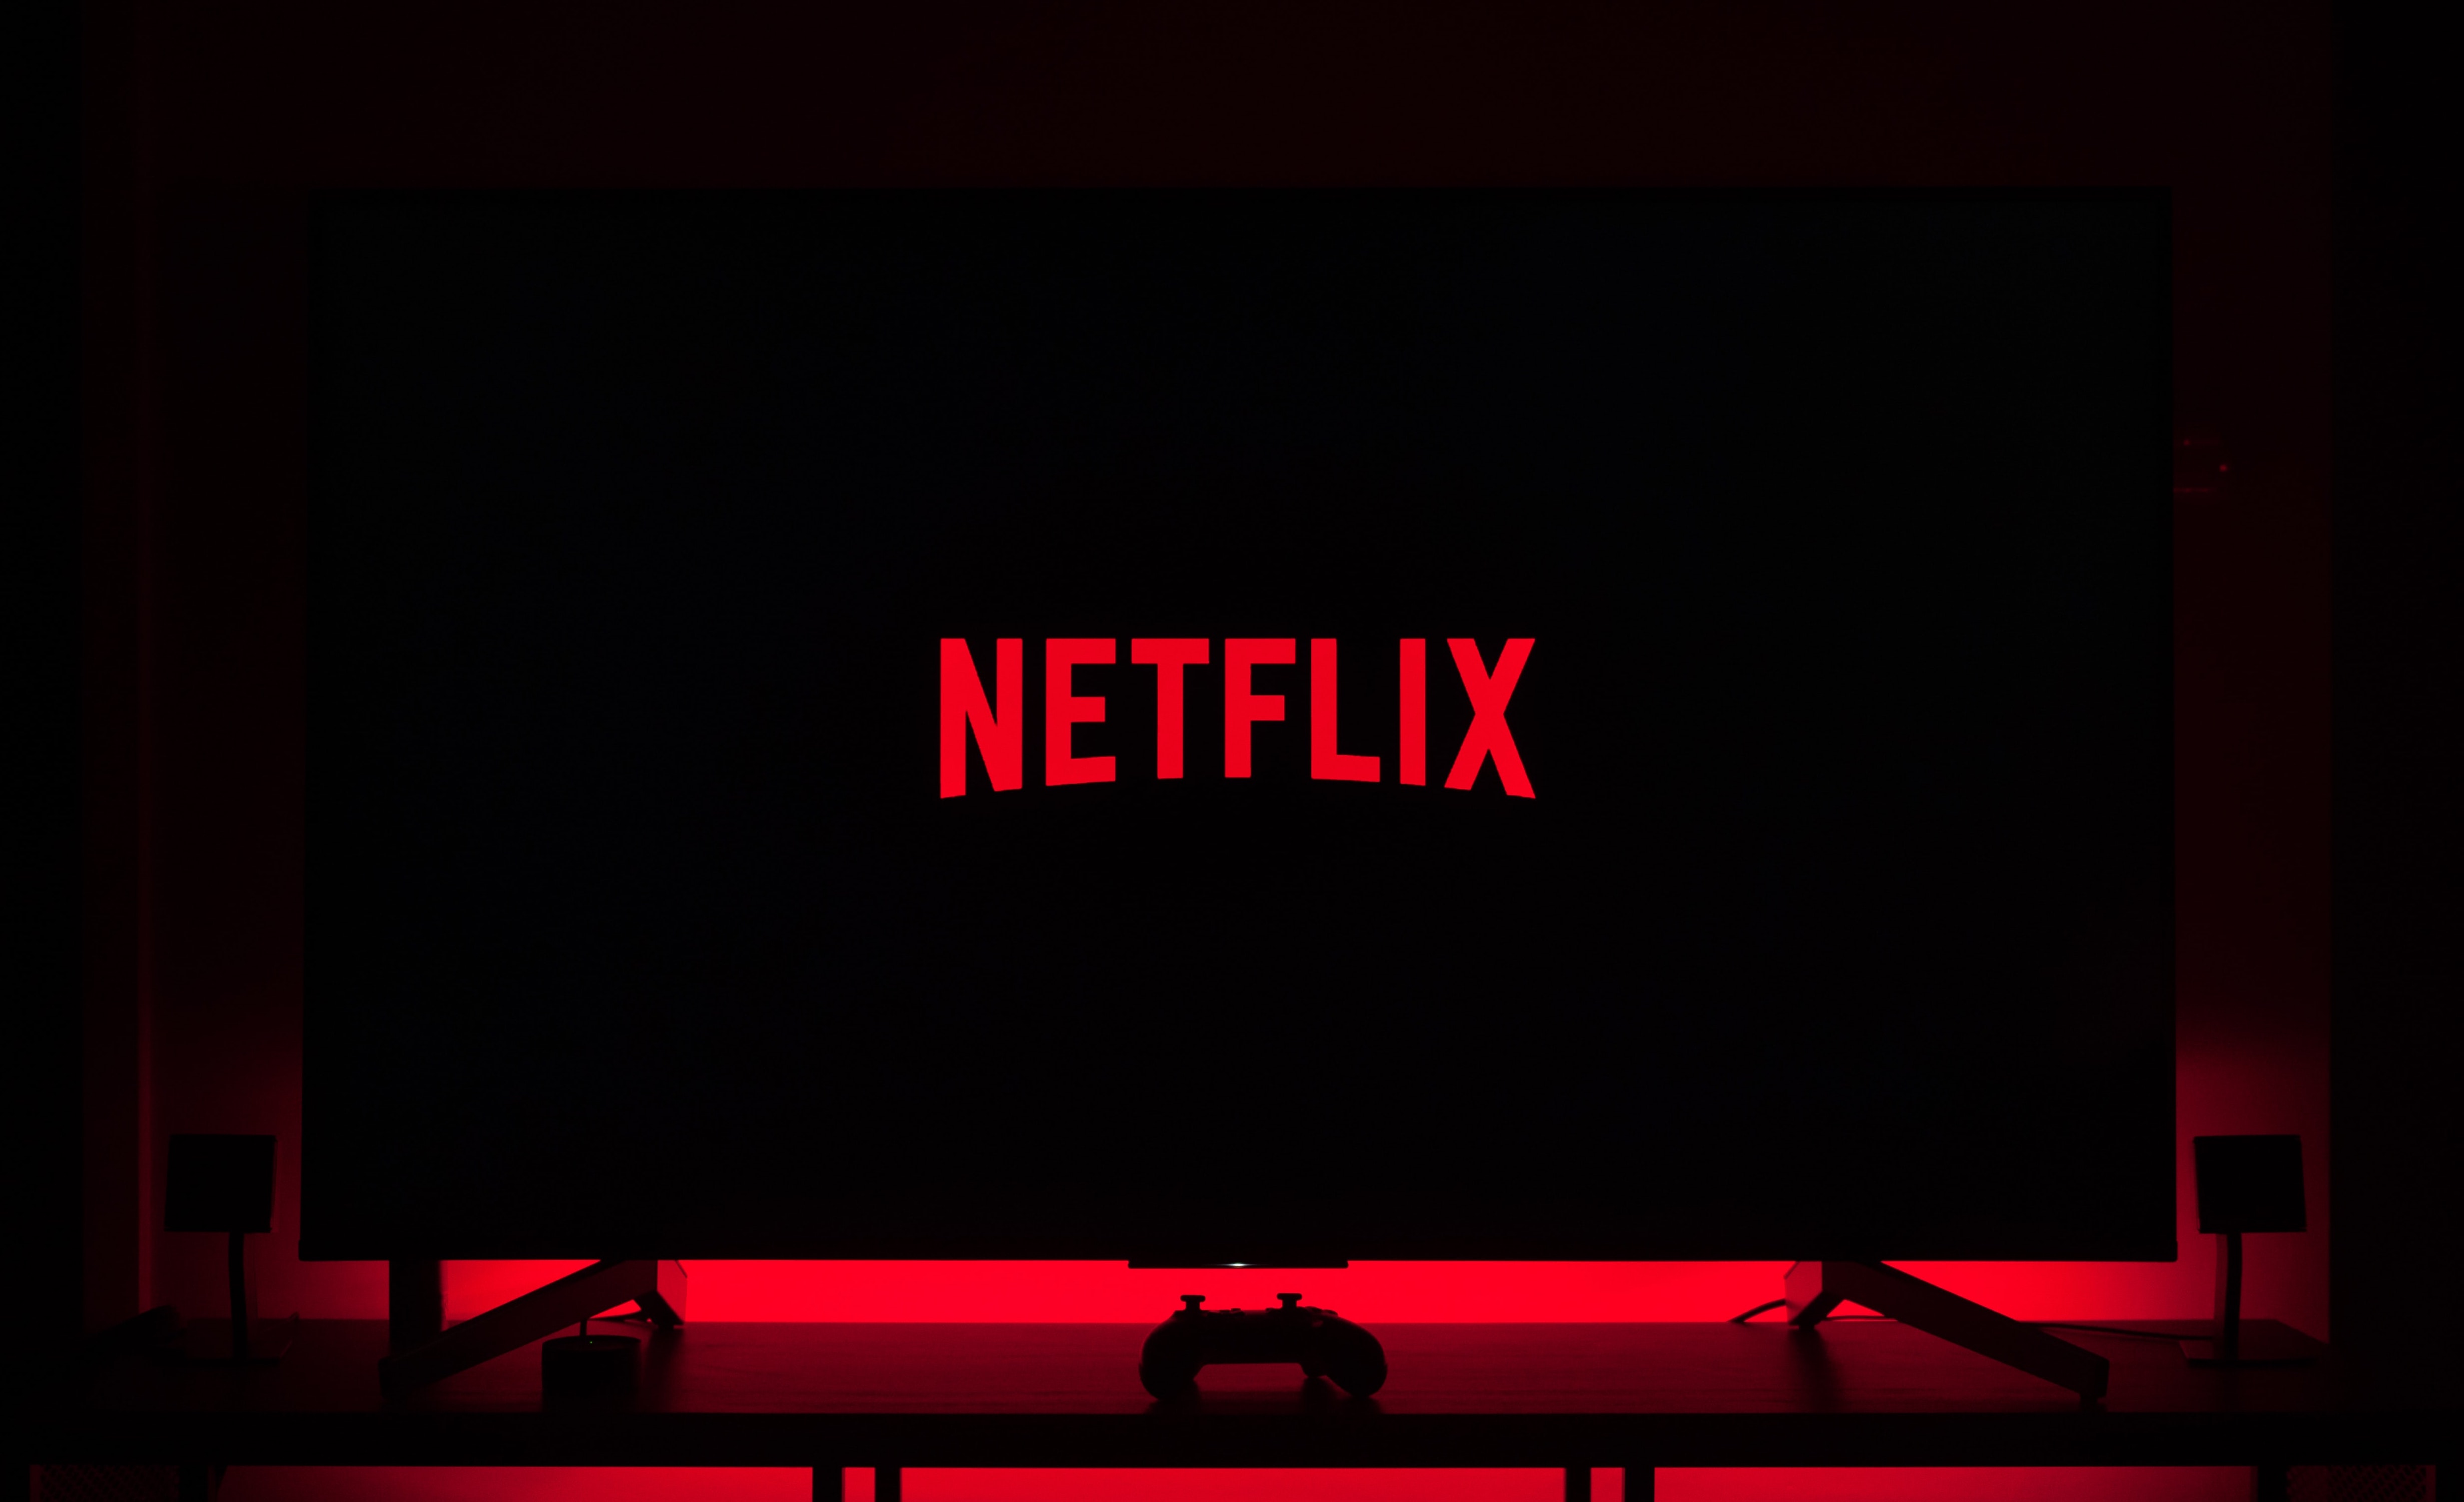 Android 版 Netflix 播放界面添加“屏幕锁定”功能